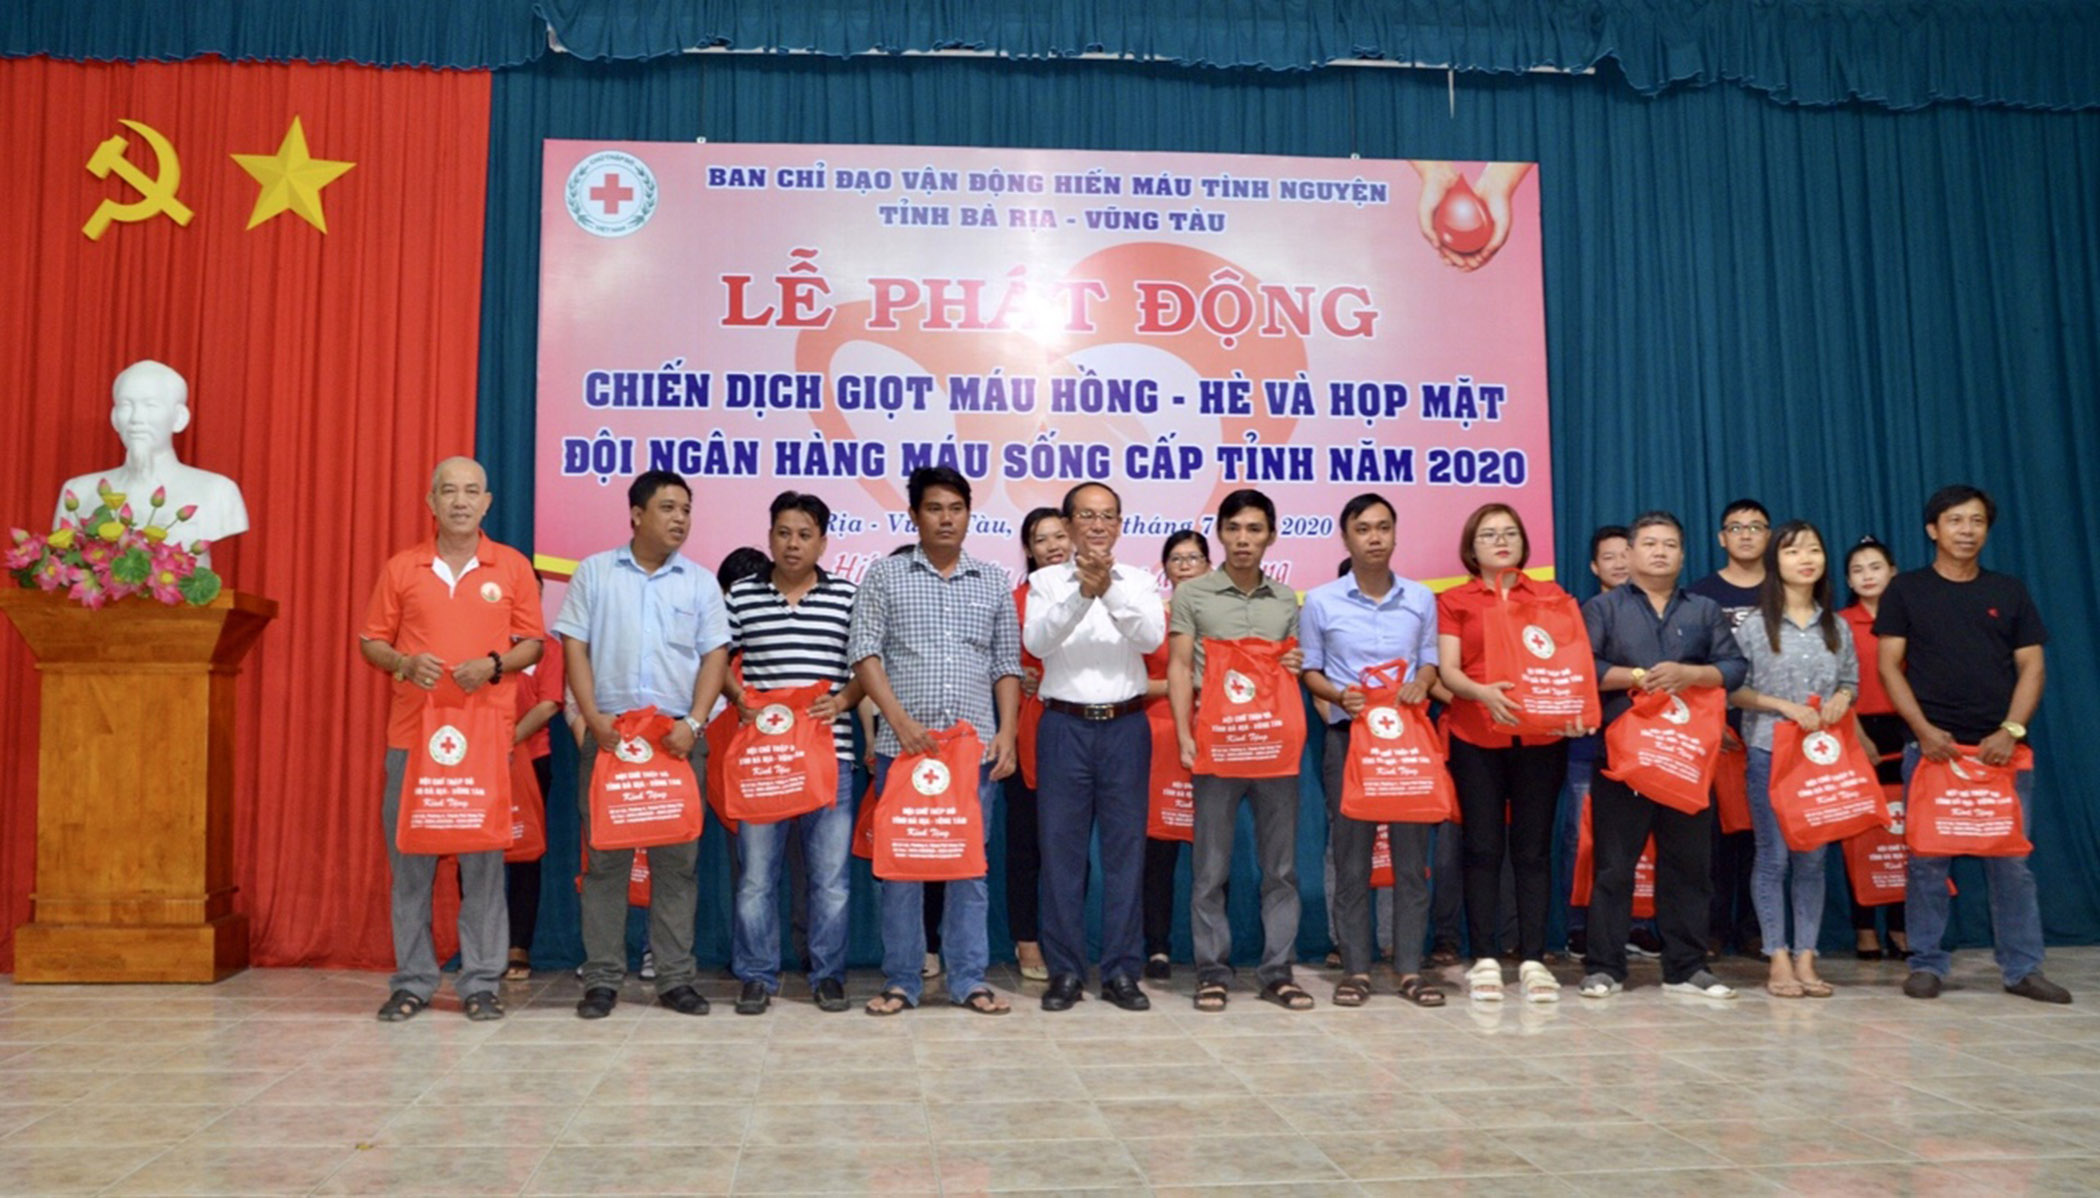 Ông Lương Văn Quang, Phó giám đốc Sở Y tế, Phó Trưởng BCĐ vận động HMTN tỉnh tặng quà cho các thành viên đội ngân hàng máu sống.